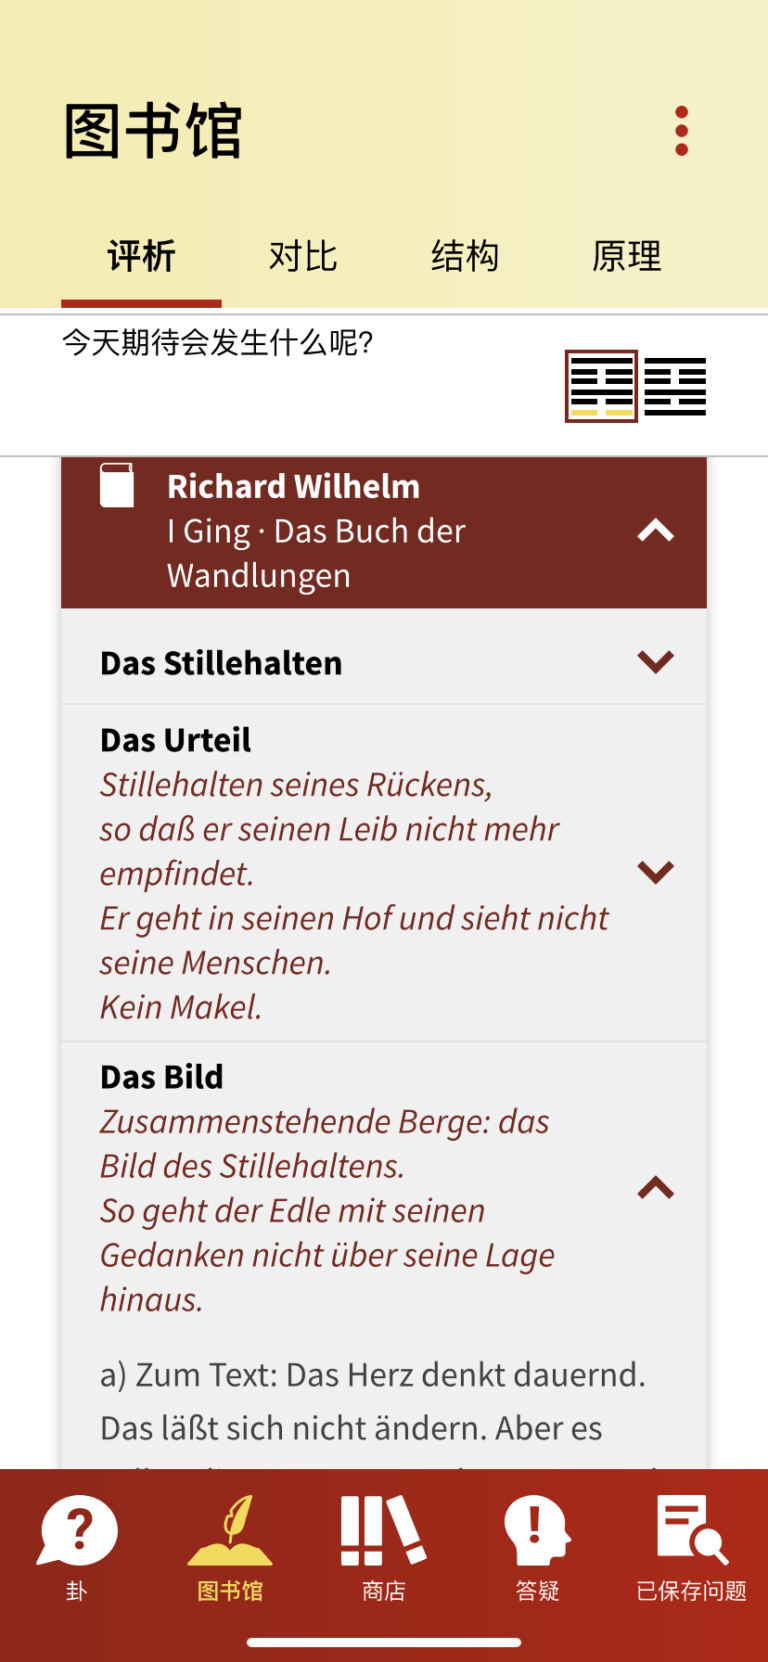 Richard Wilhelm: I Ging Das Buch der Wandlungen